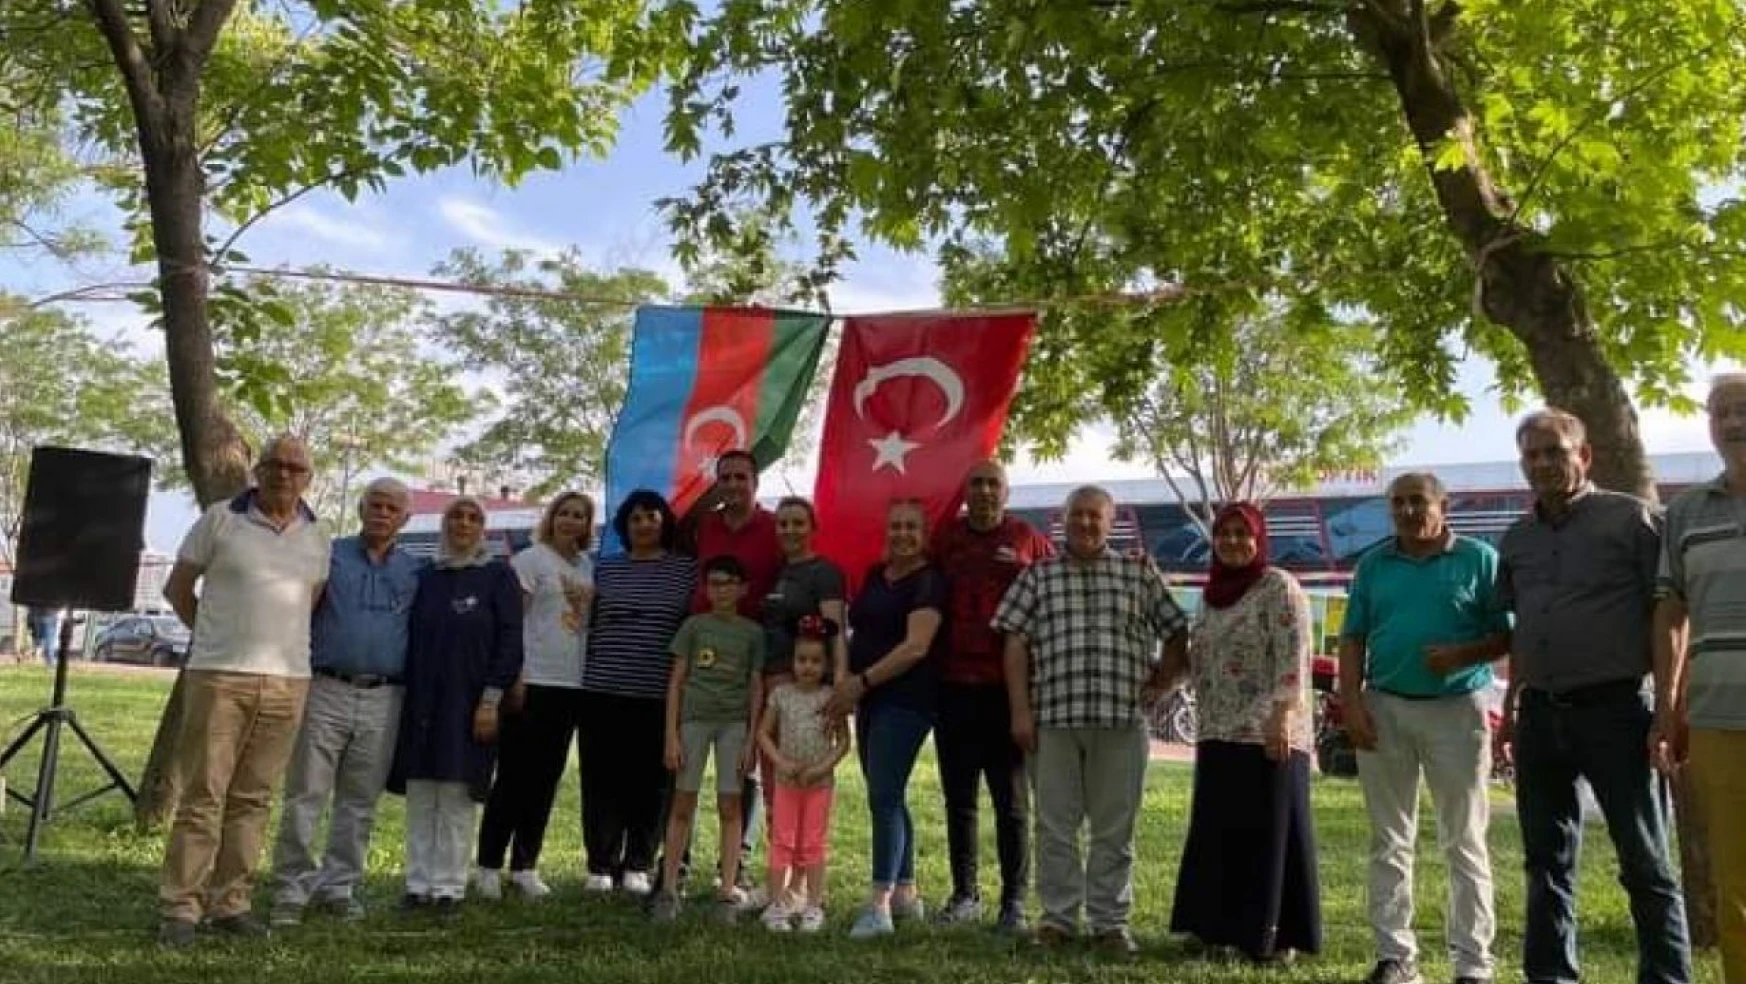 Azerbaycan'ın Bağımsızlık Günü Turgutlu'da coşkuyla kutlandı